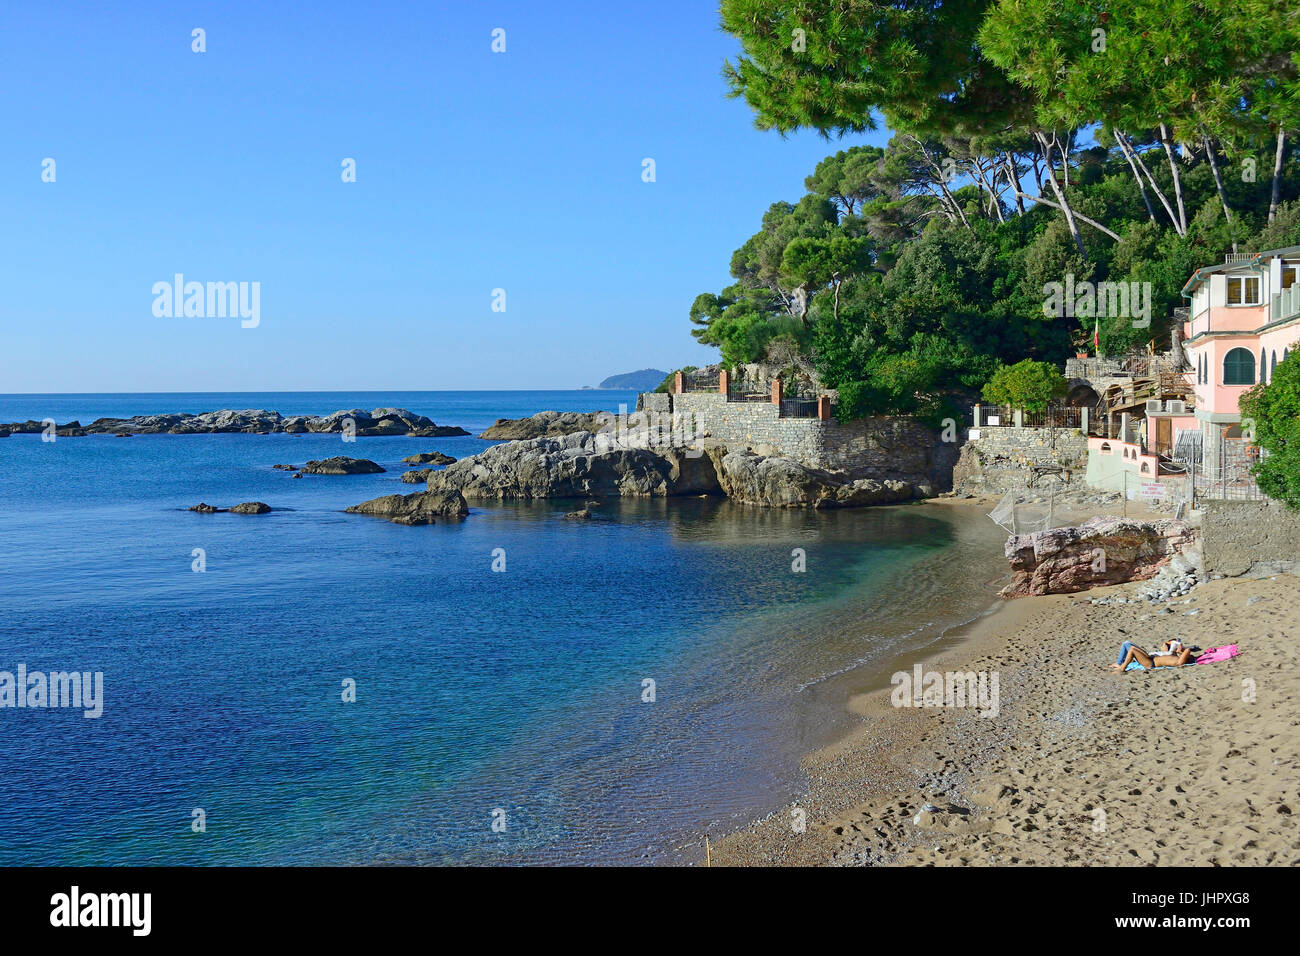 spiaggia della balena beach, Fiascherino, Lerici, Ligury, Italy Stock Photo